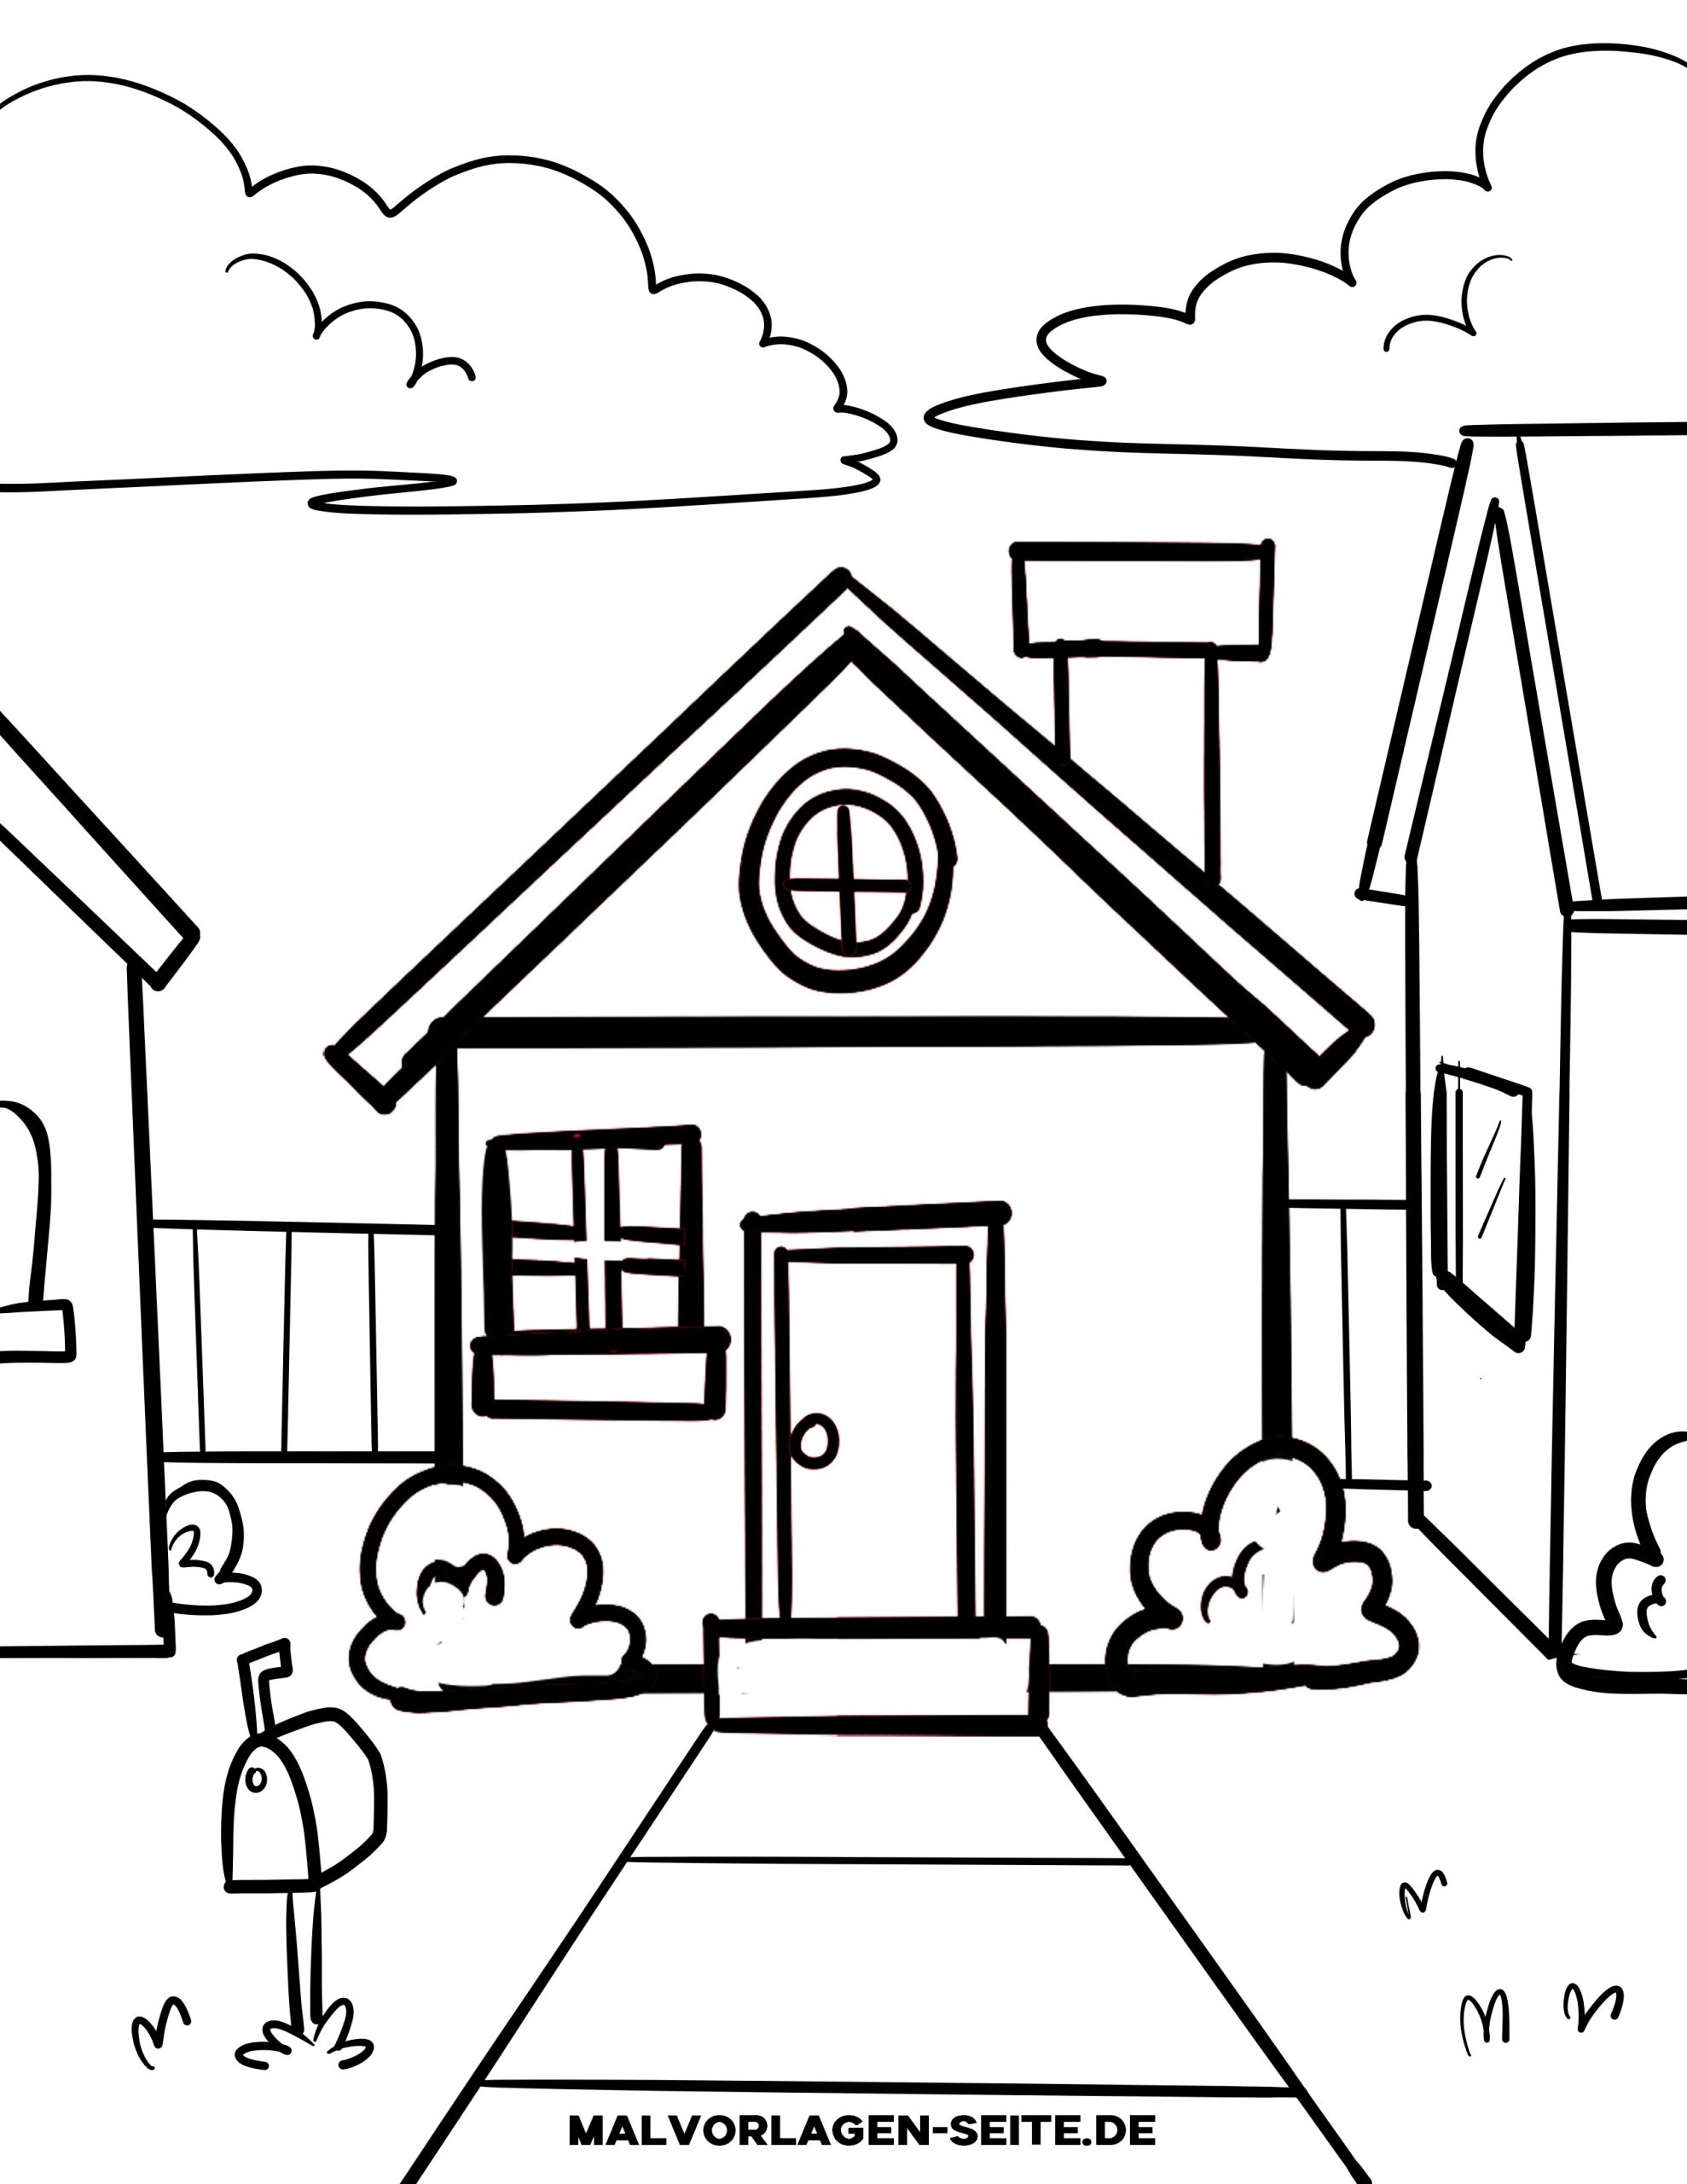 Malvorlagen Und Ausmalbilder Von Gebäuden Und Häusern mit Zeichnungsvorlagen Für Kindergartenkinder